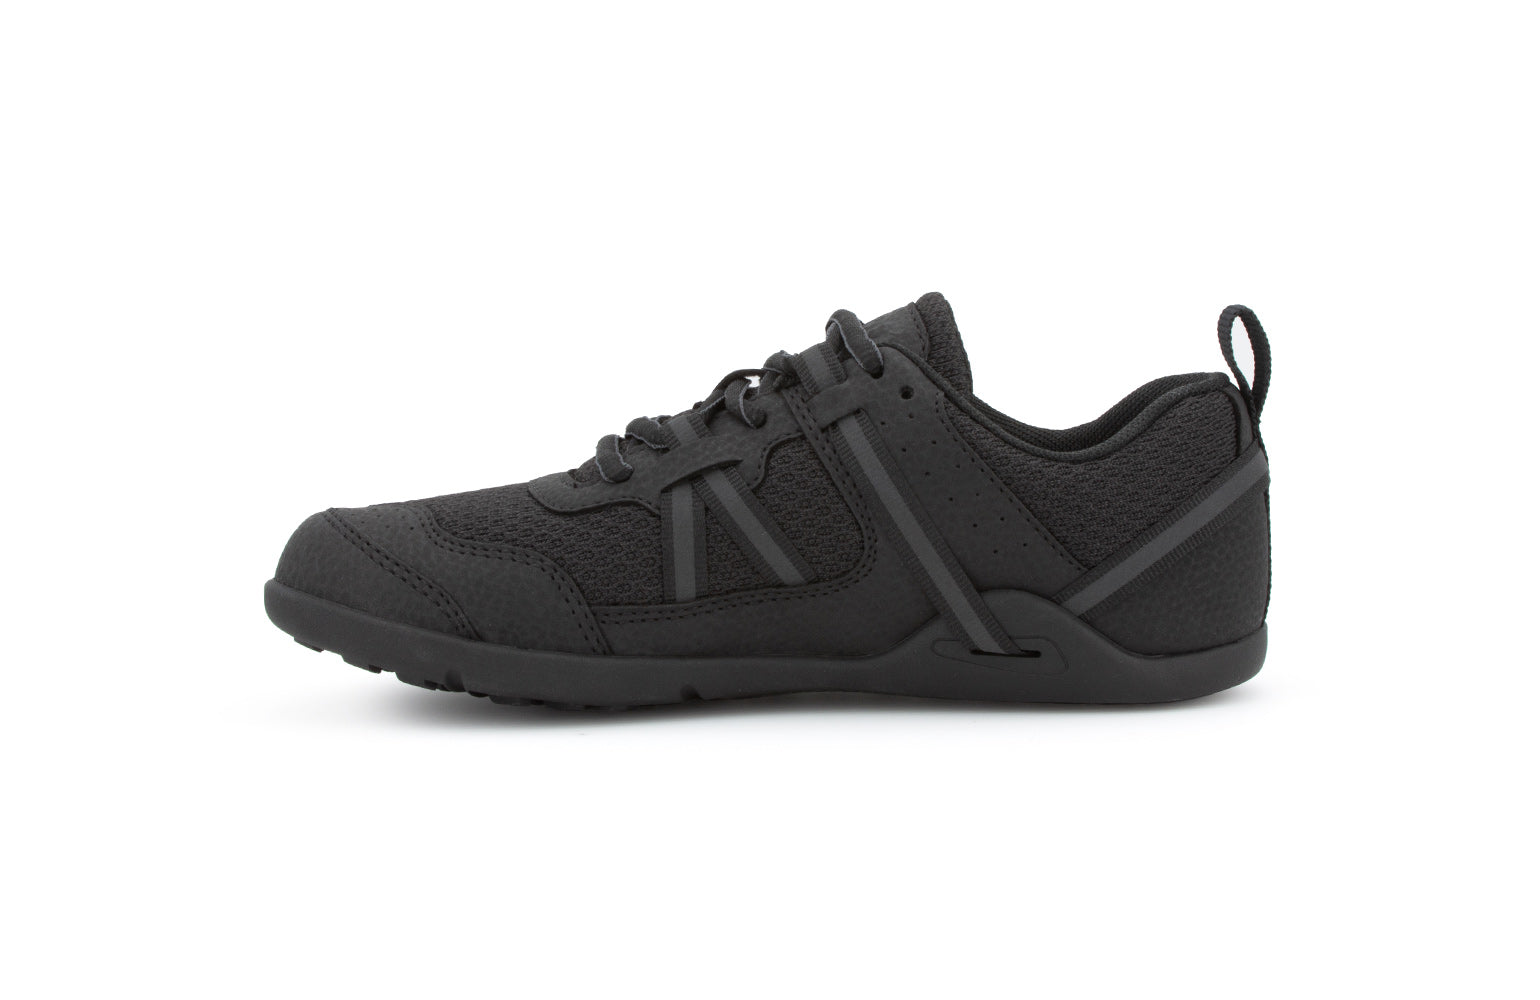 Xero Shoes Prio Kids barfods træningssko/sneakers til børn i farven black, inderside